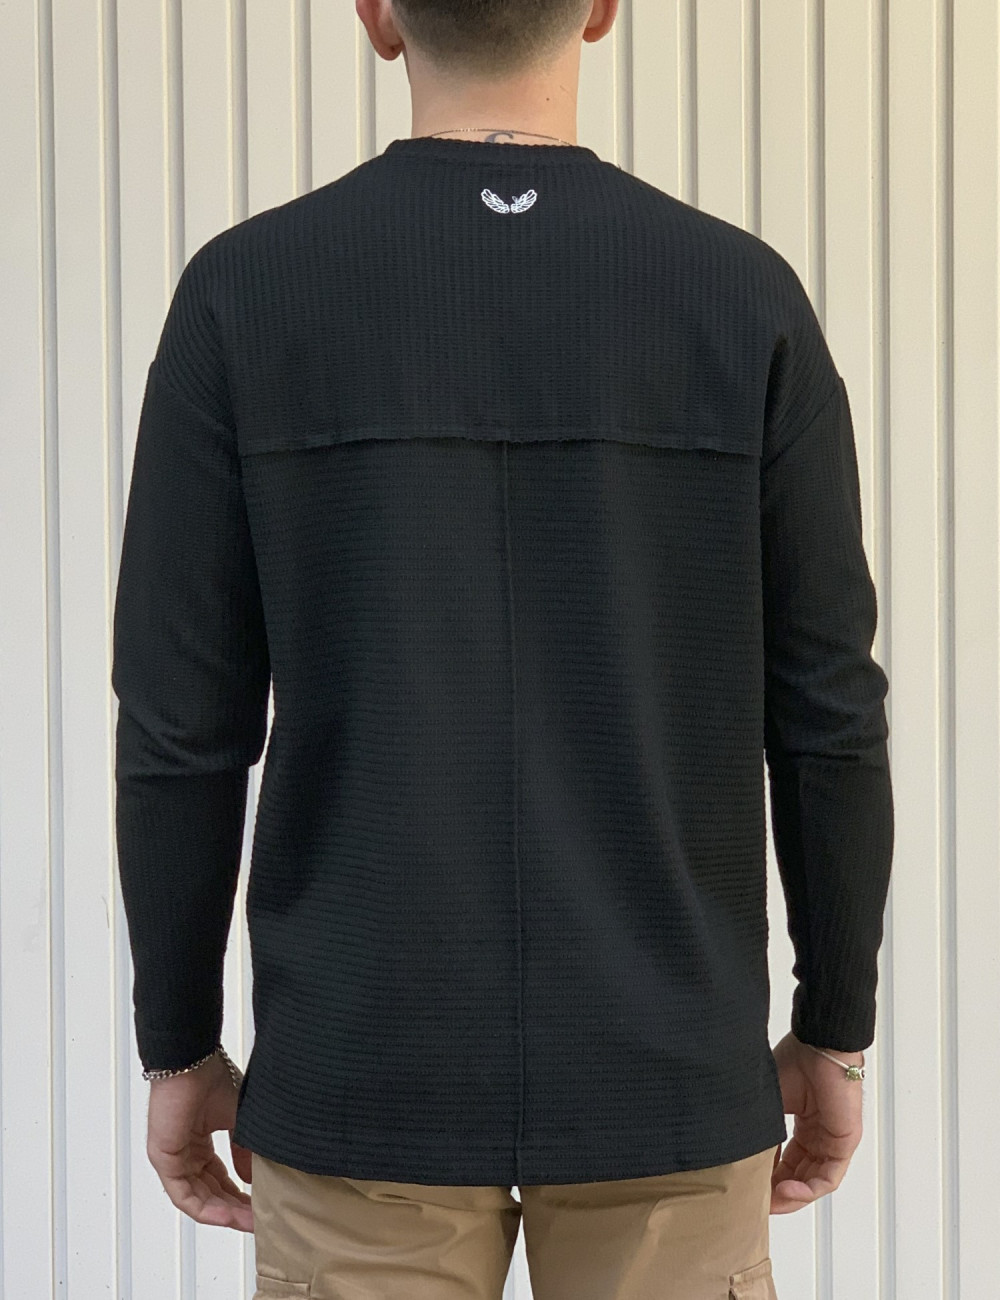 Ανδρική μαύρη μακρυμάνικη μπλούζα με ζακάρ 1918